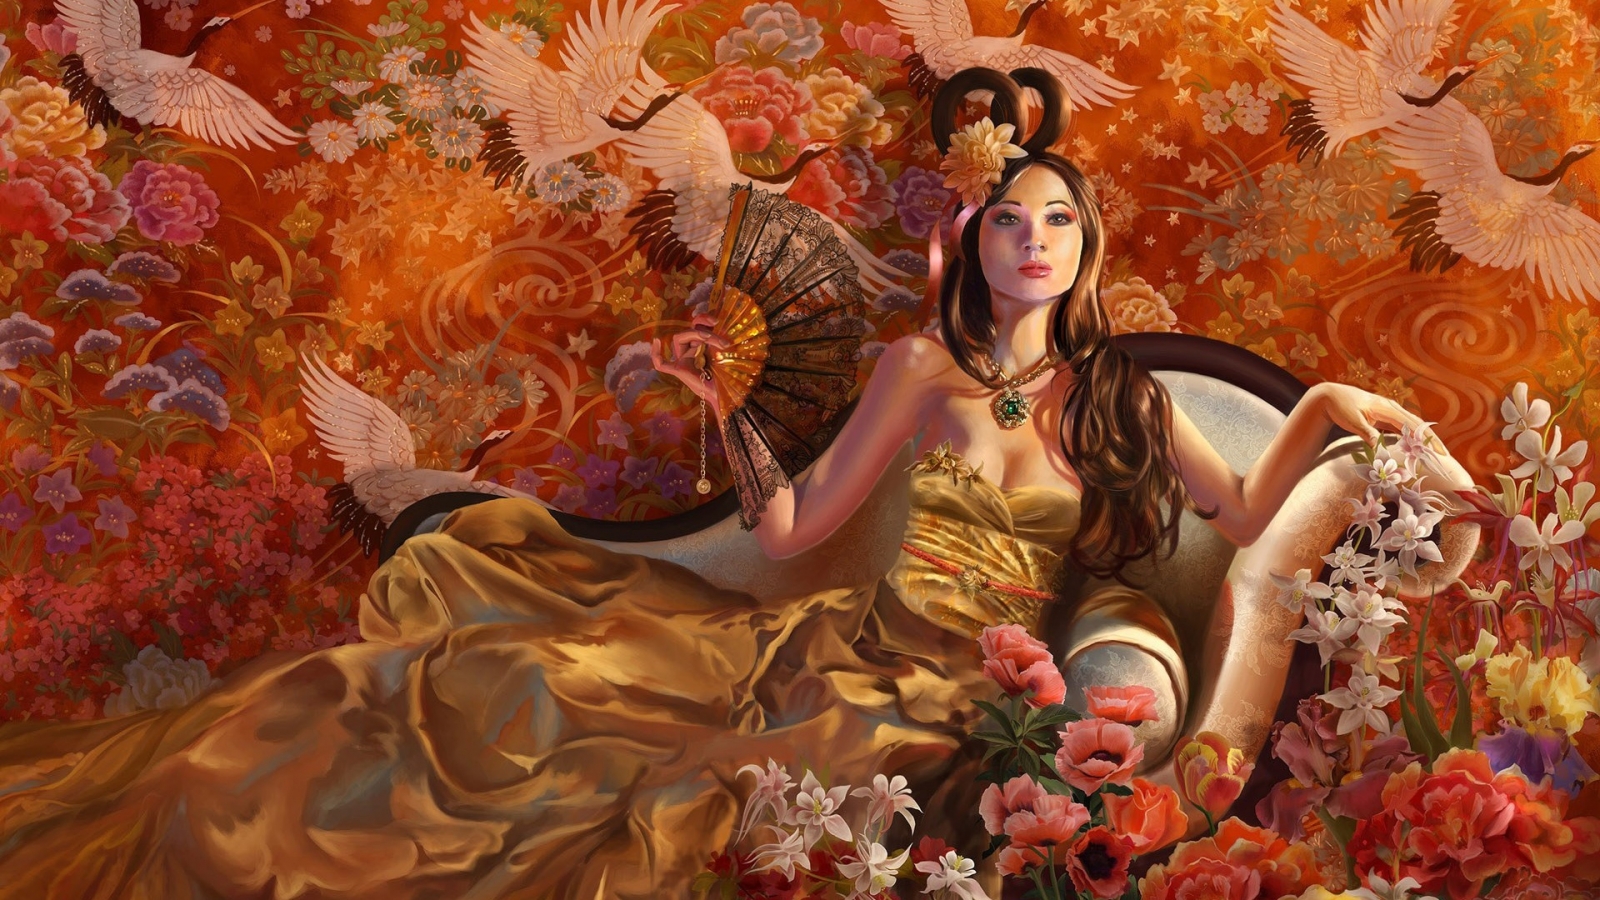 Fantasy Girl Autumn for 1600 x 900 HDTV resolution